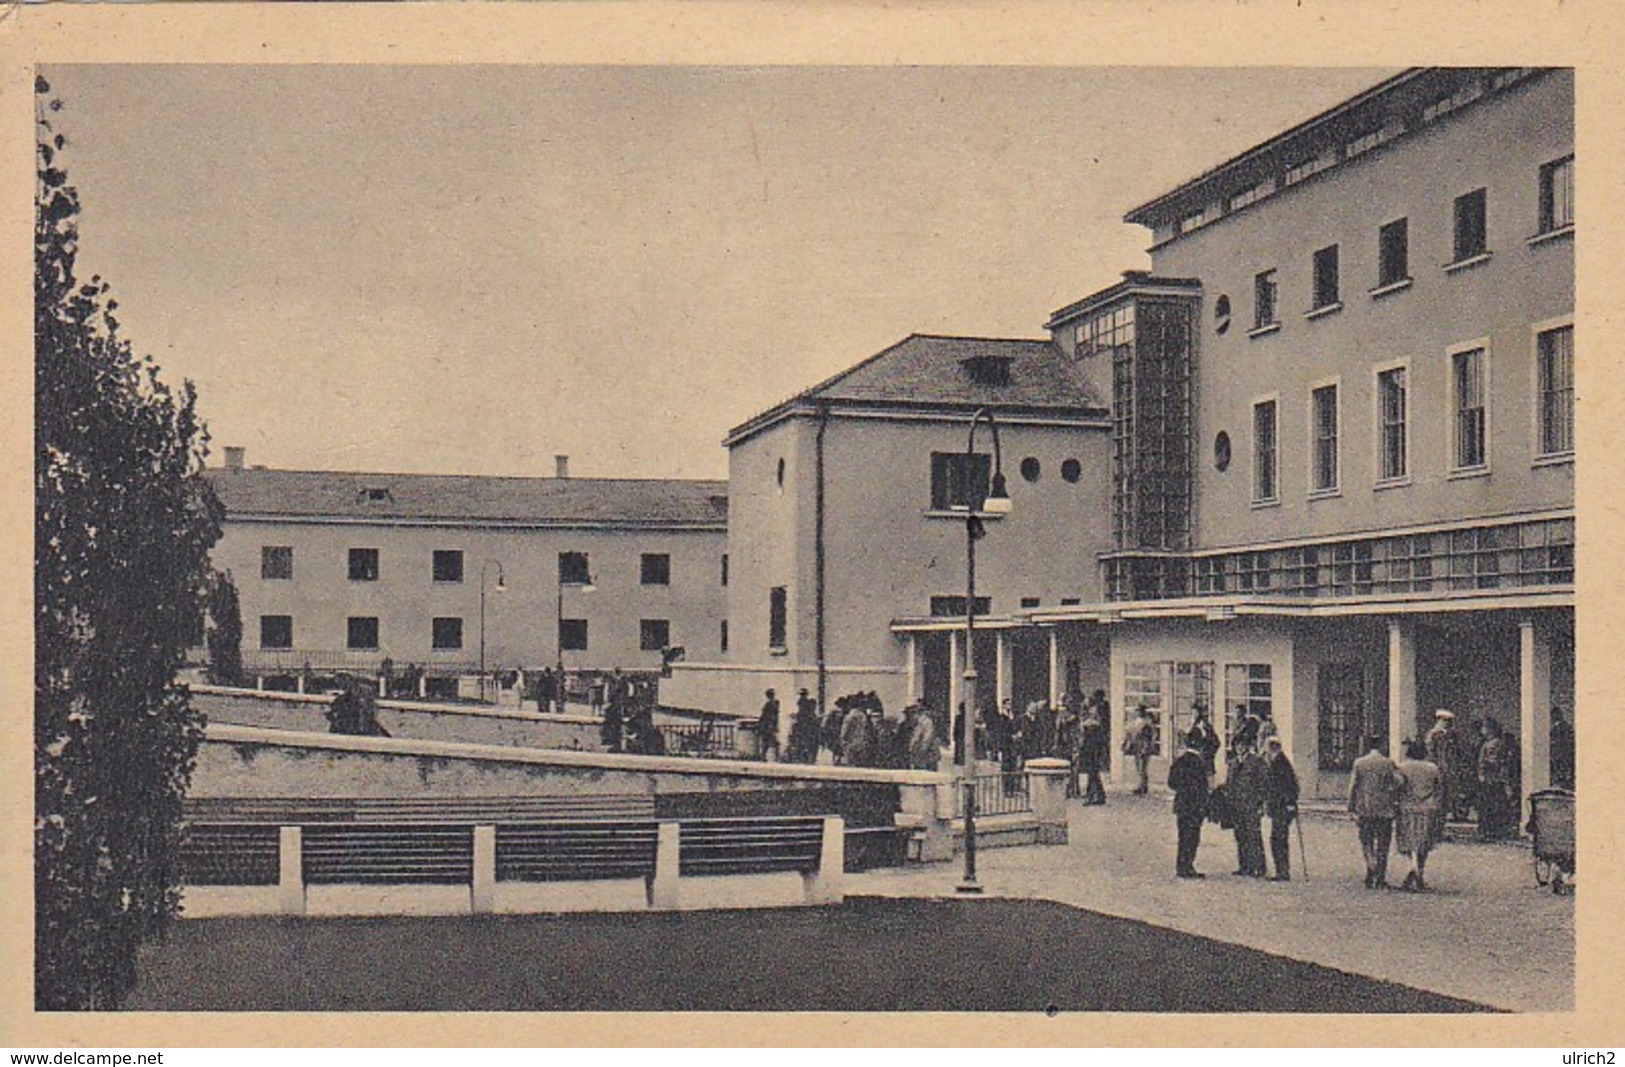 AK Gallspach - Oberdonau - Institut Zeileis - Ca. 1945 (41506) - Gallspach